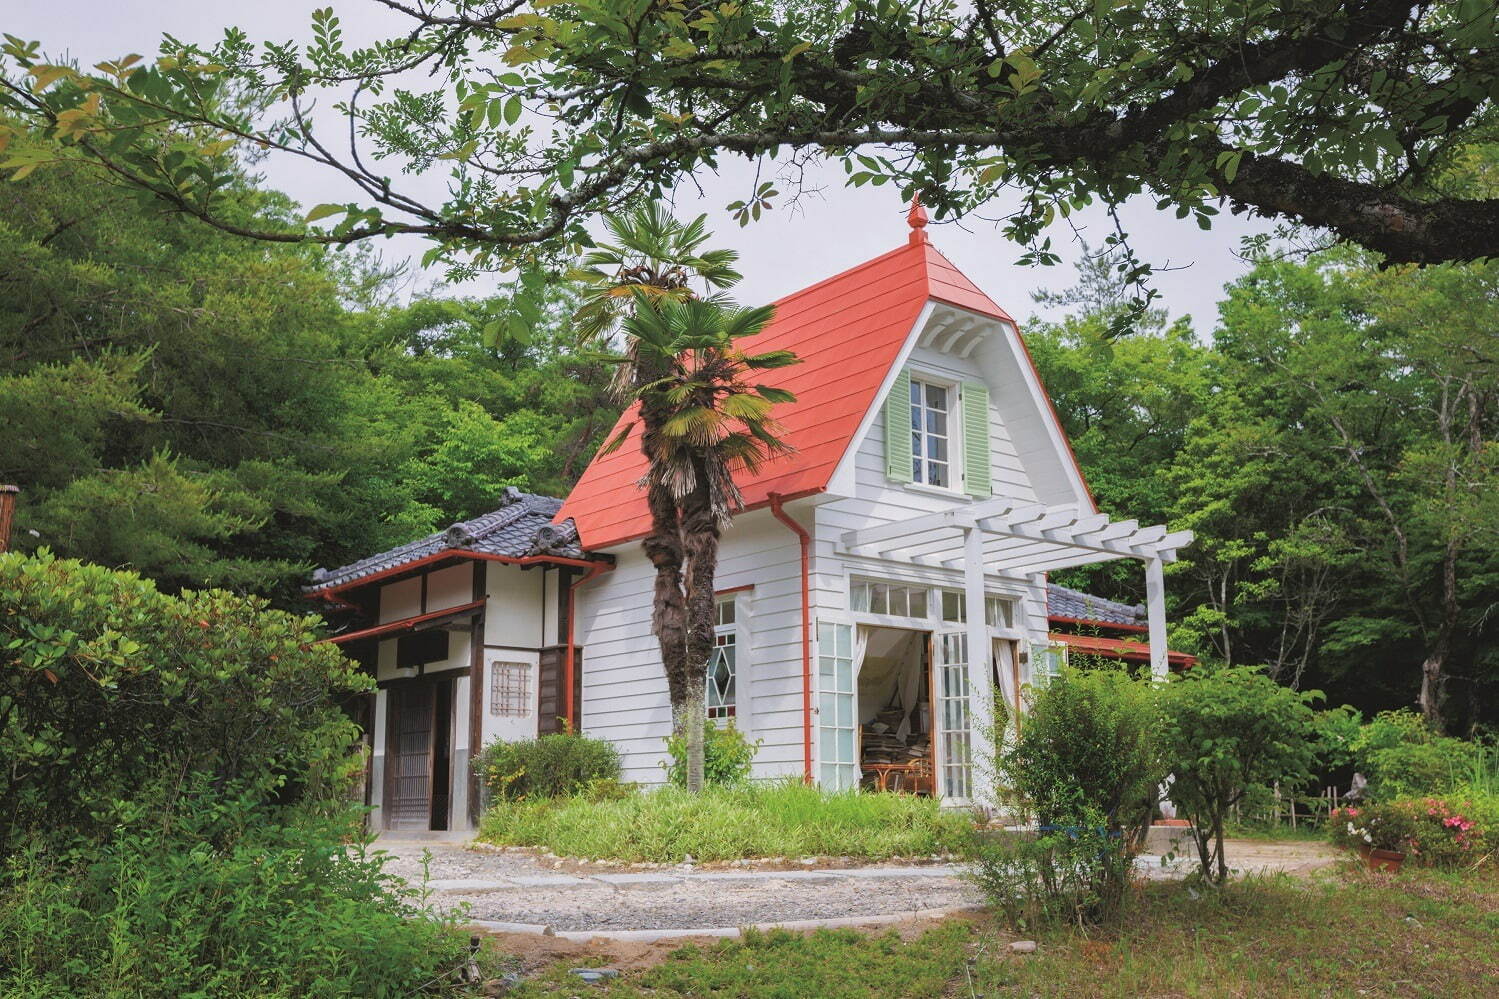 どんどこ森「サツキとメイの家」
© Studio Ghibli